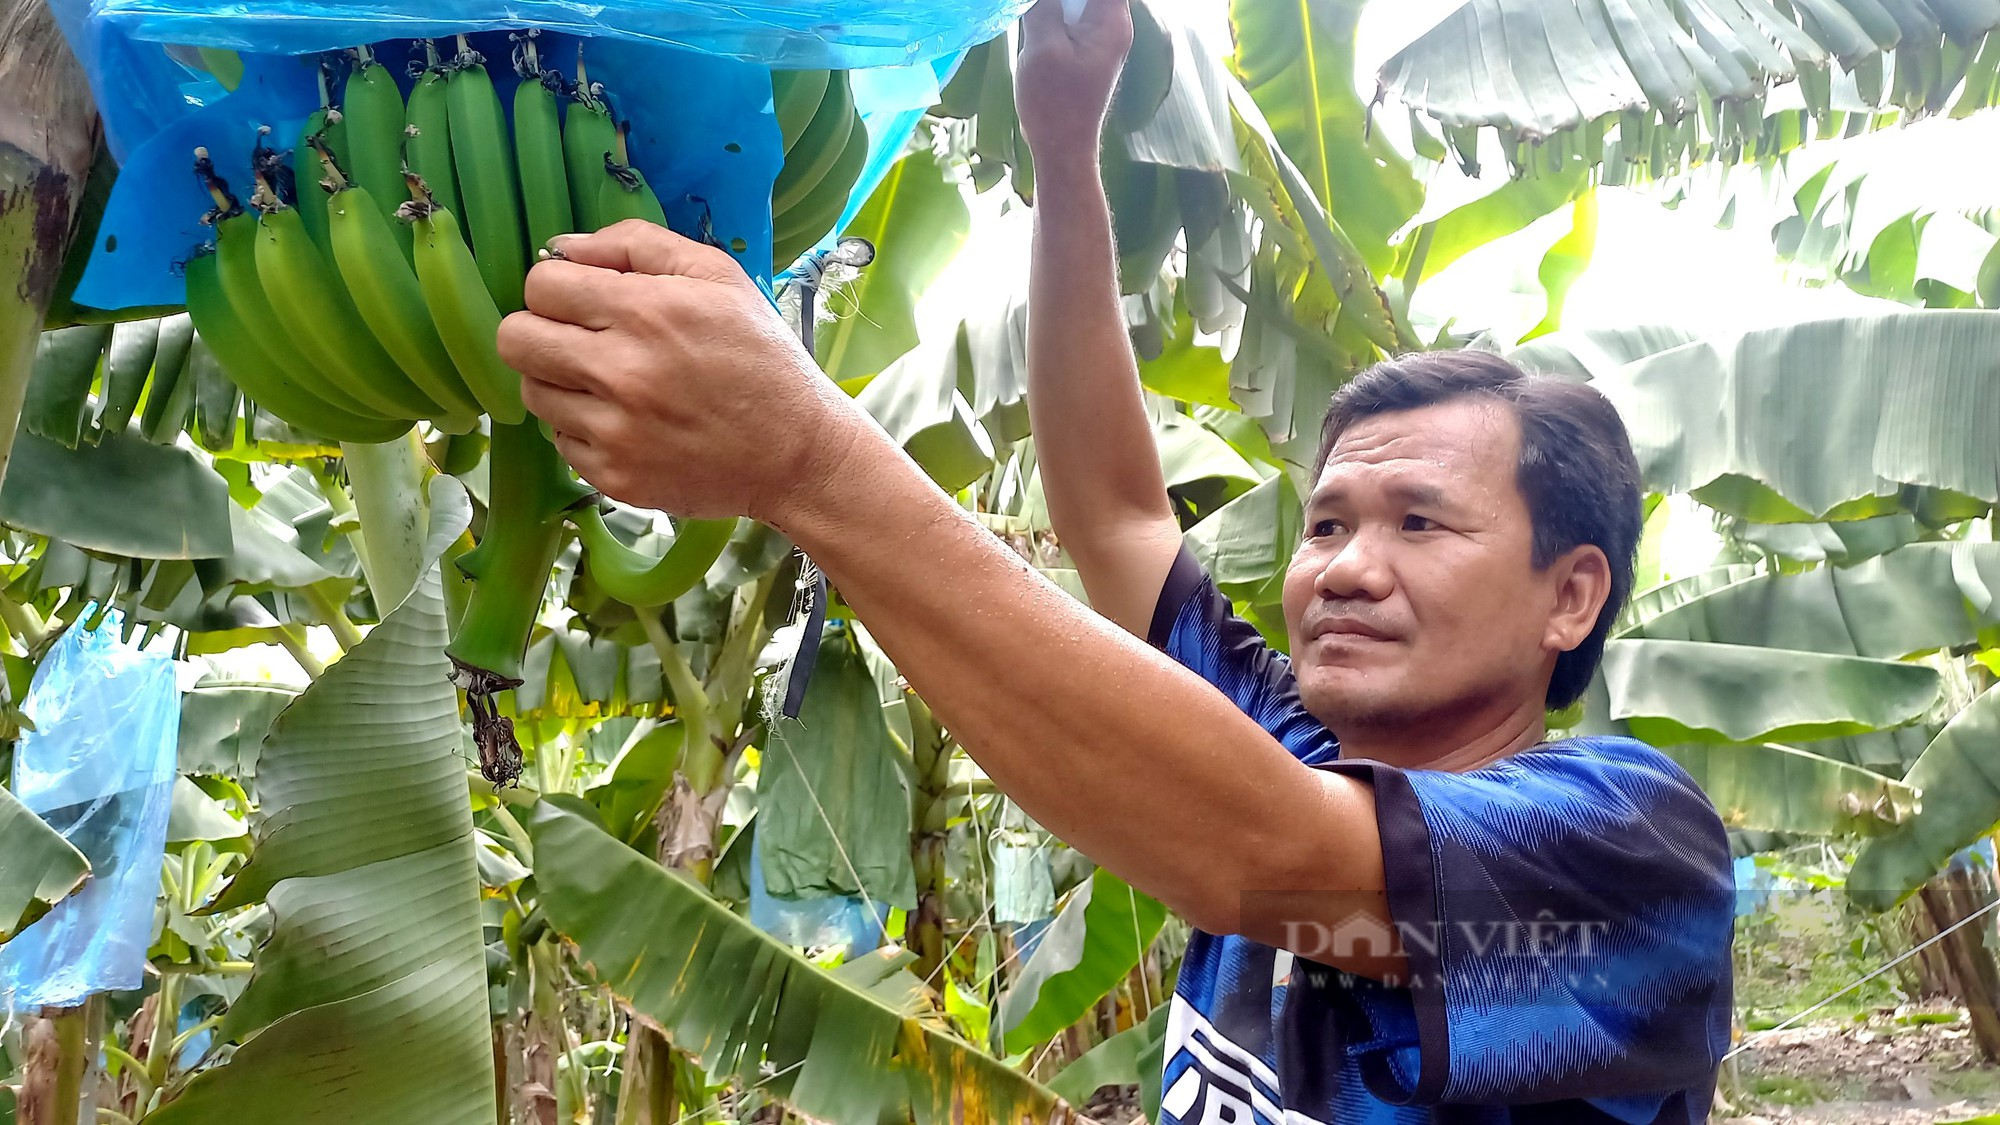 Trồng trái xuất khẩu đứng thứ 2 của Việt Nam, anh nông dân ở Tứ giác Long Xuyên thu lời 18 tỷ đồng/vụ - Ảnh 1.